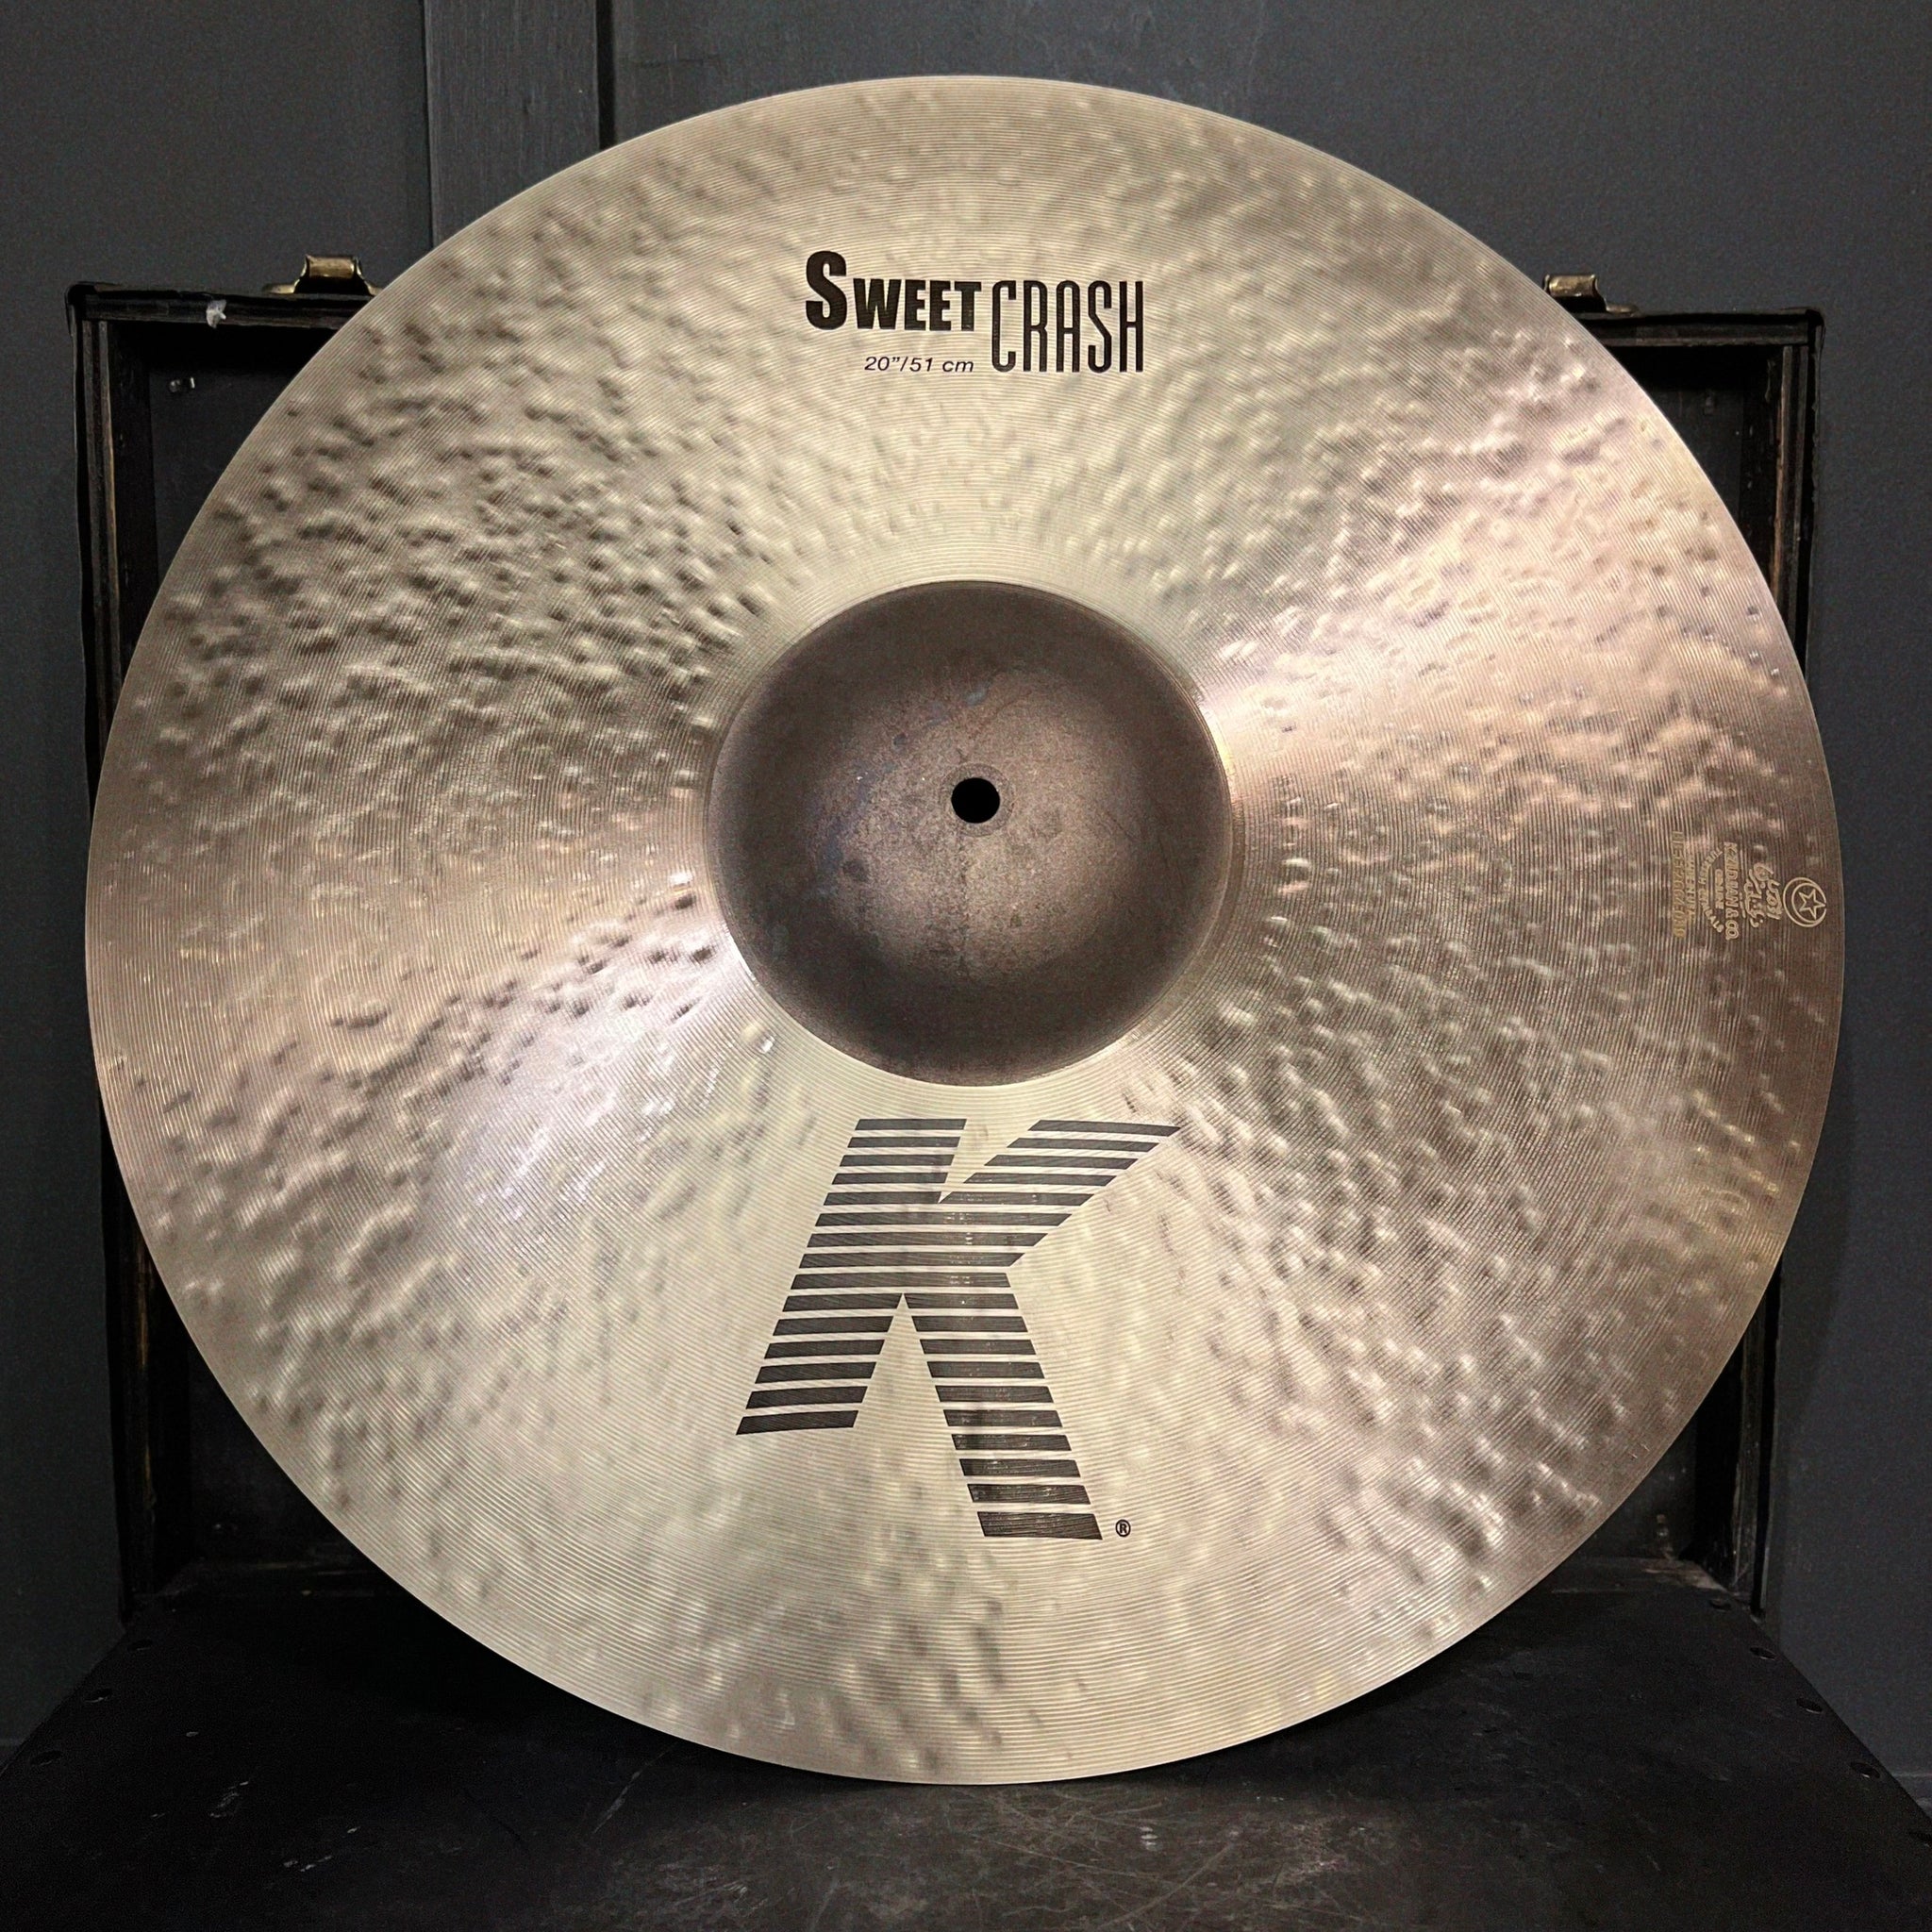 NEW Zildjian 20" K. Zildjian Sweet Crash Cymbal - 1668g